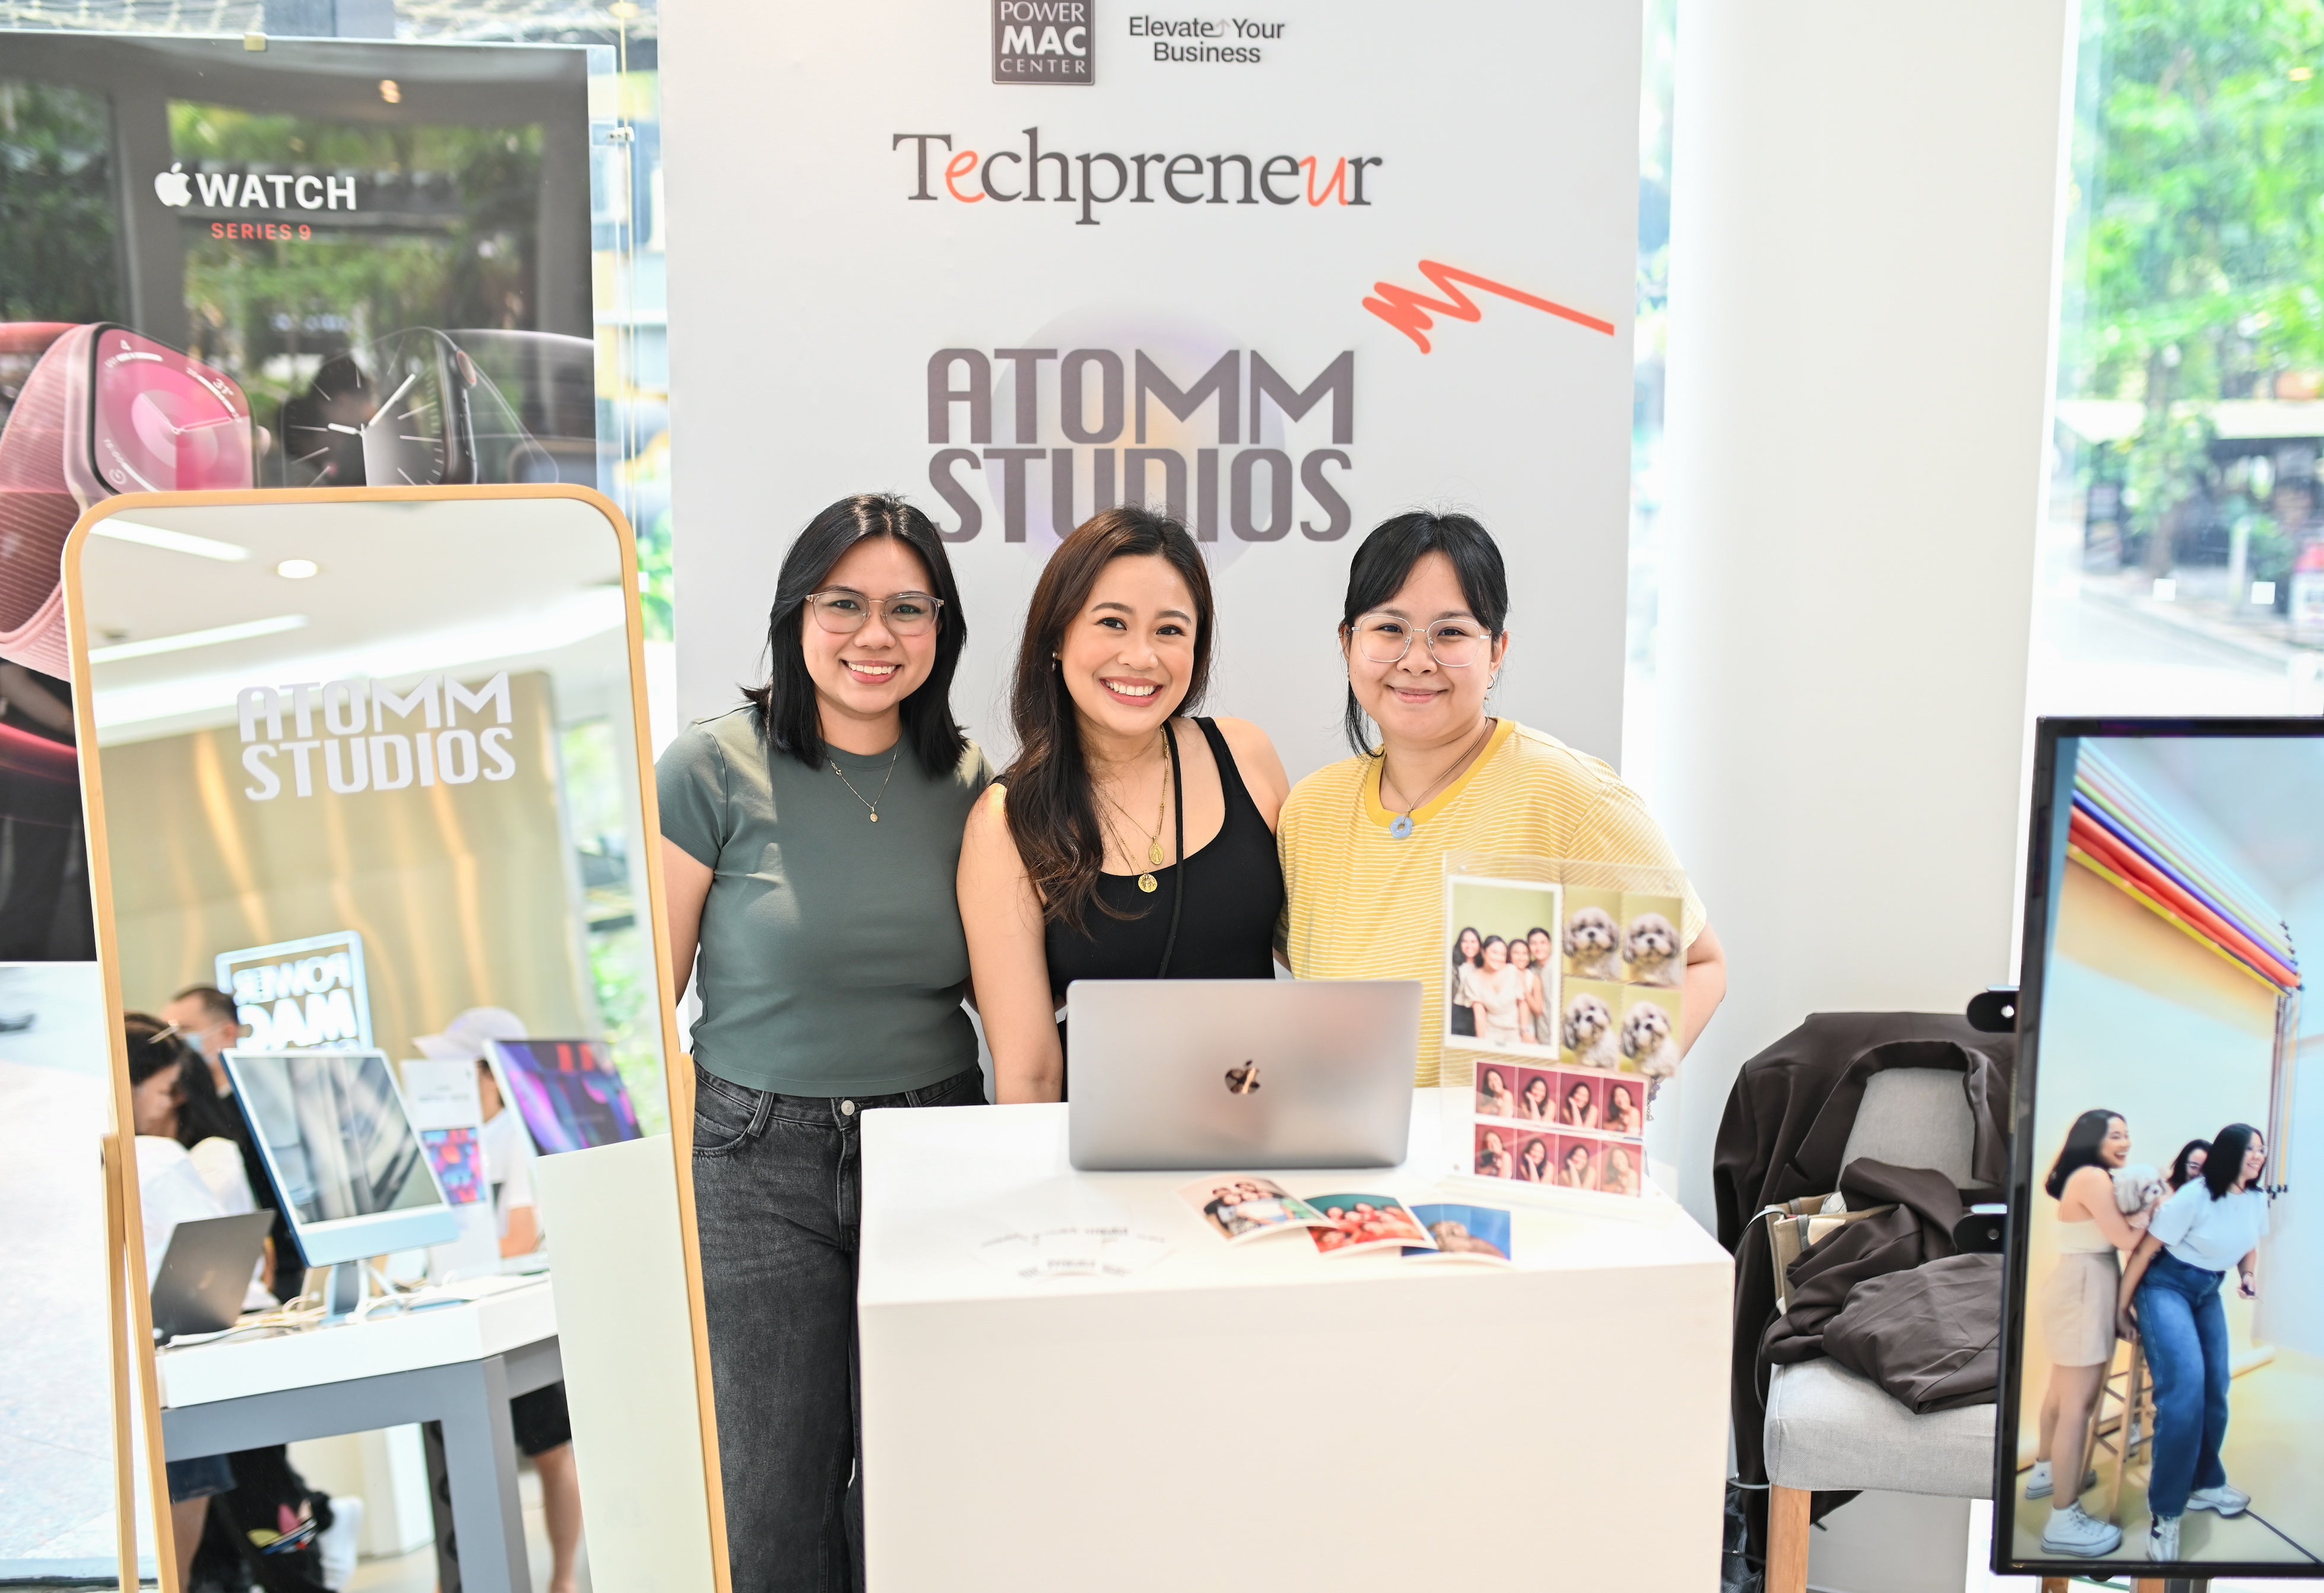 Techpreneur booth at Power Mac Center